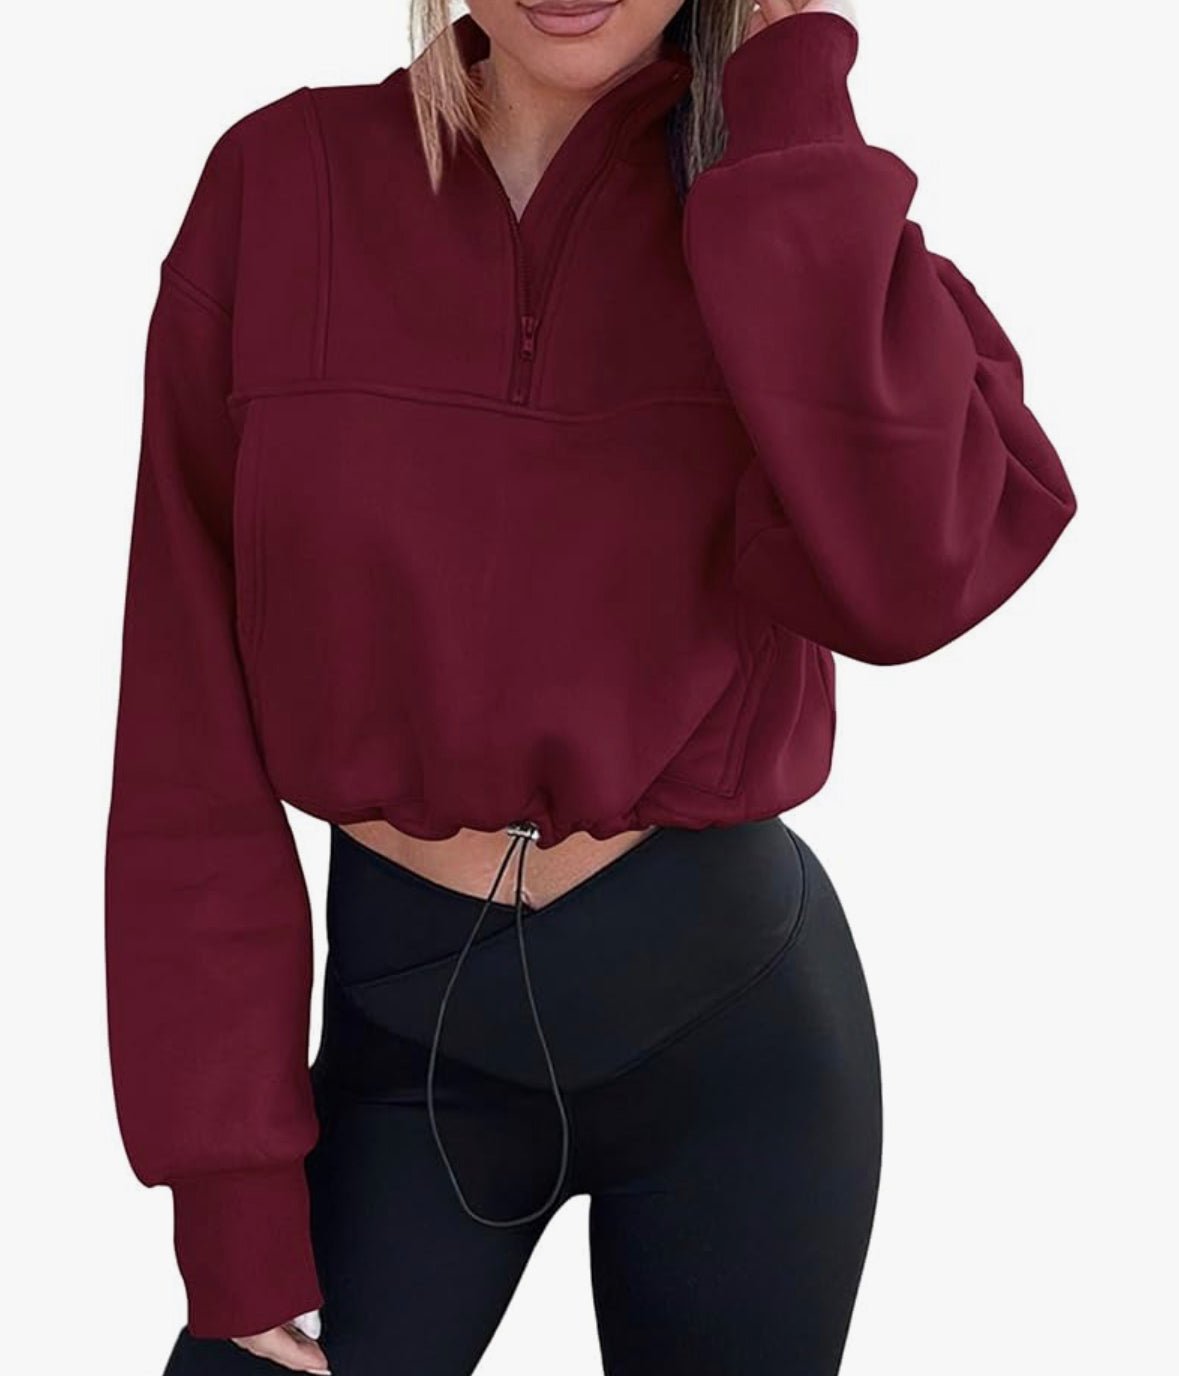 Kirundo Red Cropped Half Zip Sweatshirt (L)